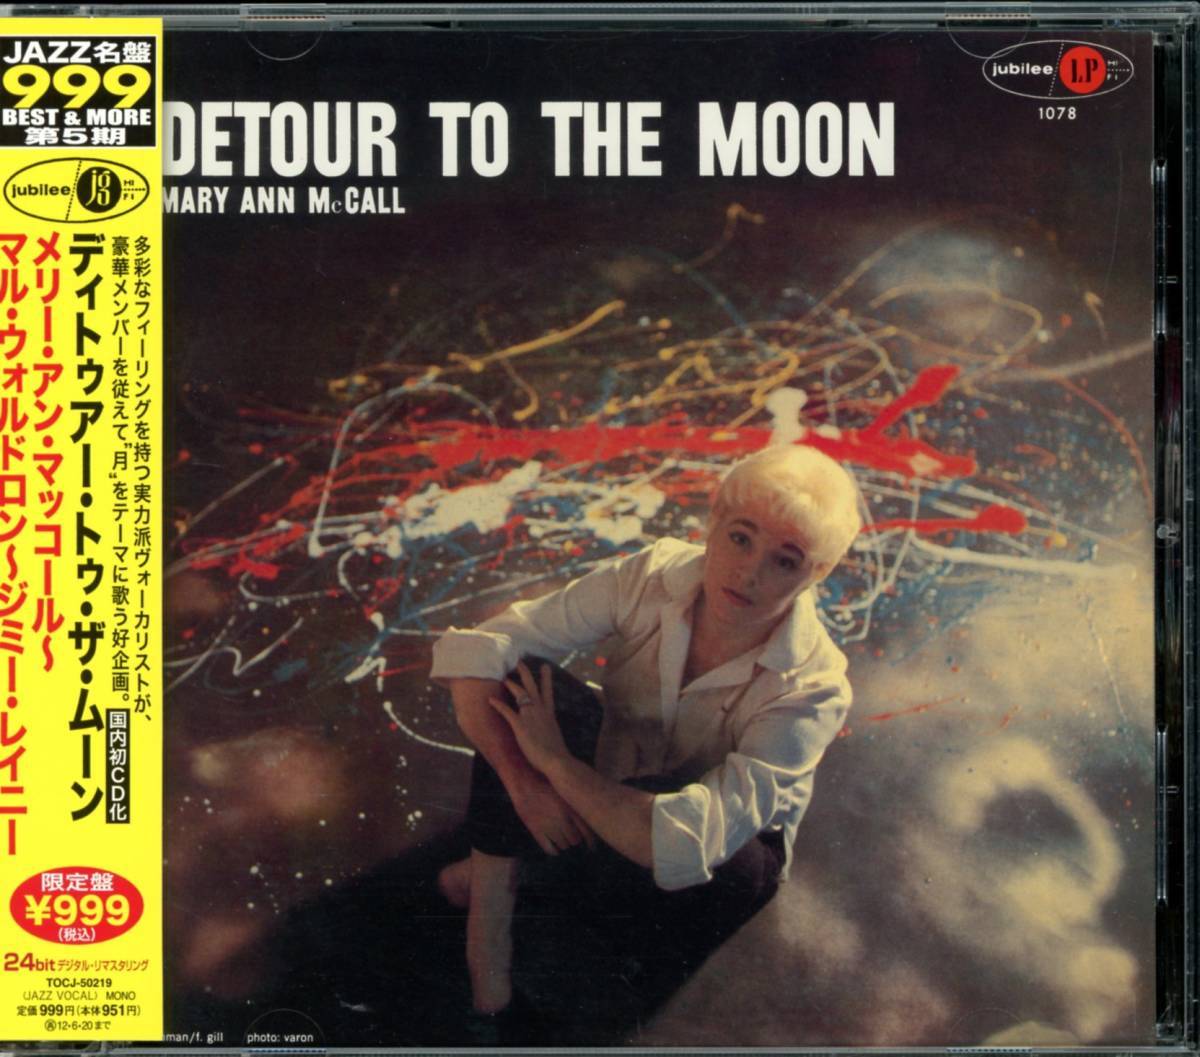 ジャズ■Mary Ann McCall / Detour To The Moon (2012) 廃盤 世界初(唯一の)CD化盤!! 最新デジタル・リマスタリング仕様の画像1